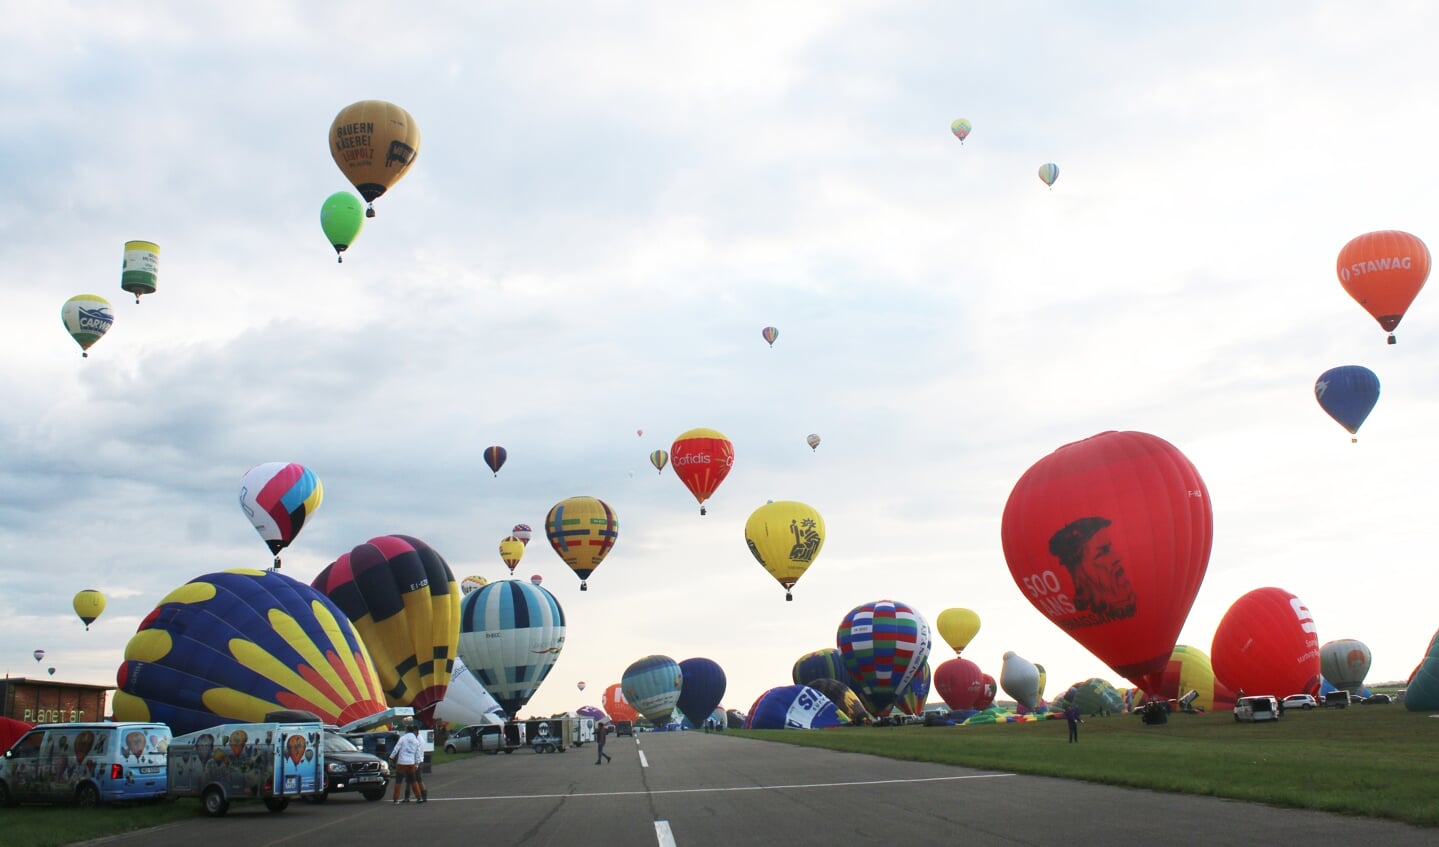 Links en rechts van de landingsbaan worden de ballons opgeblazen om daarna te vertrekken. Je komt ogen te kort.